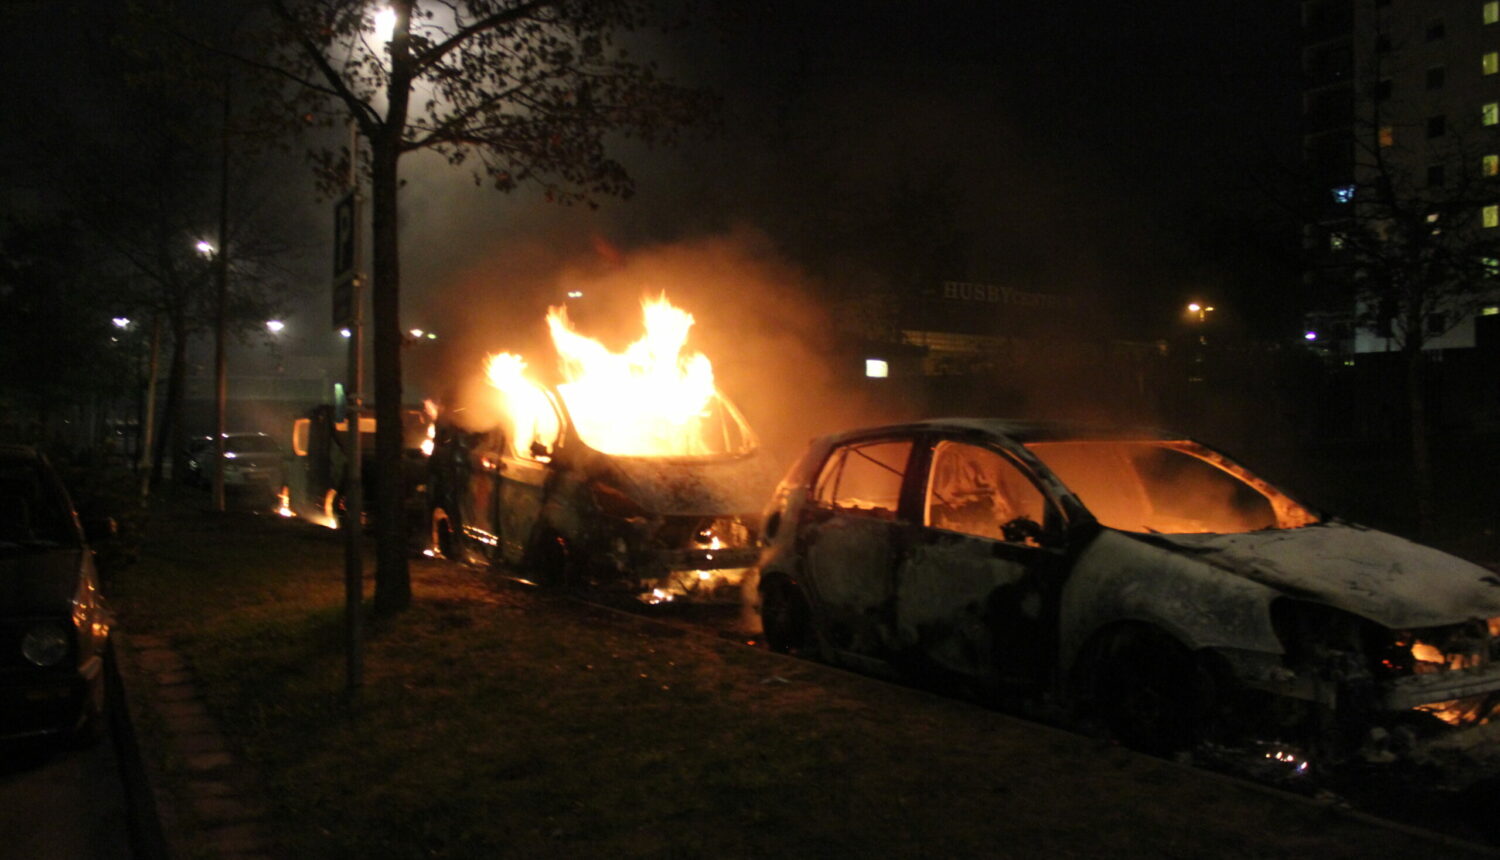 Bilar brinner under en natt.